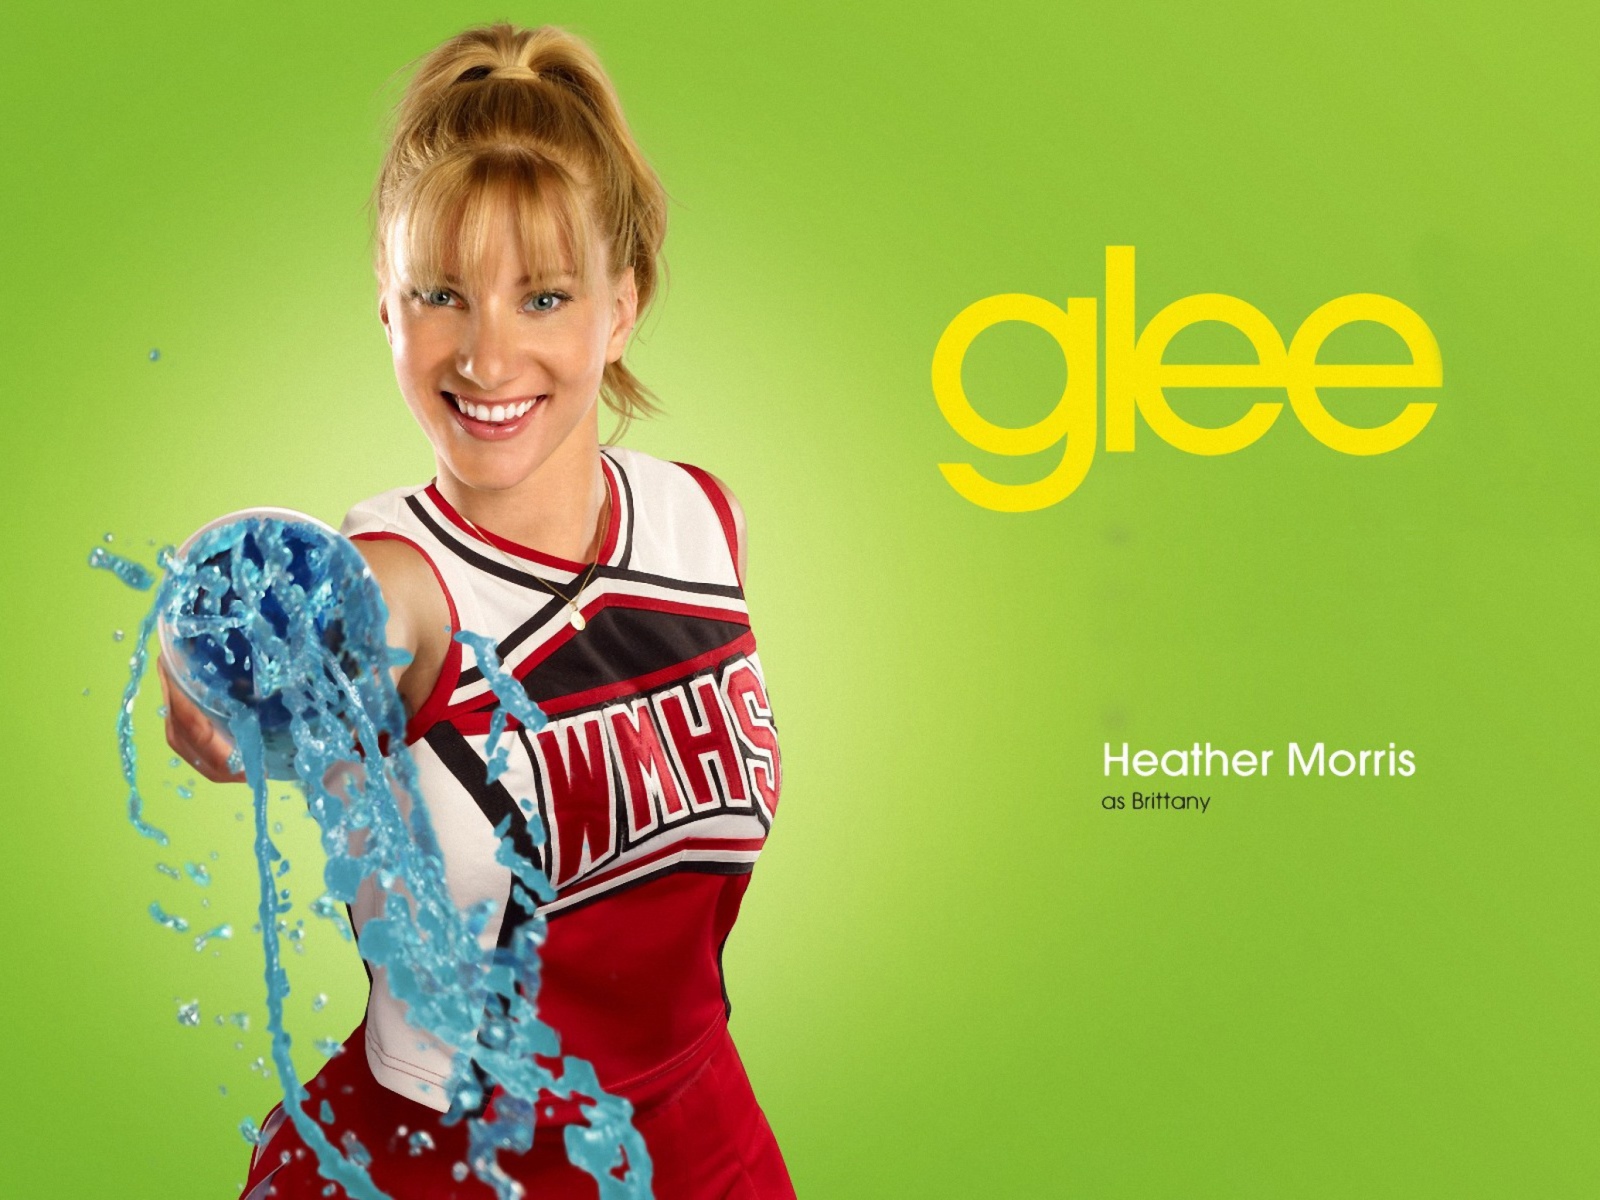 Heather Morris Glee Brittany screenshot #1 1600x1200